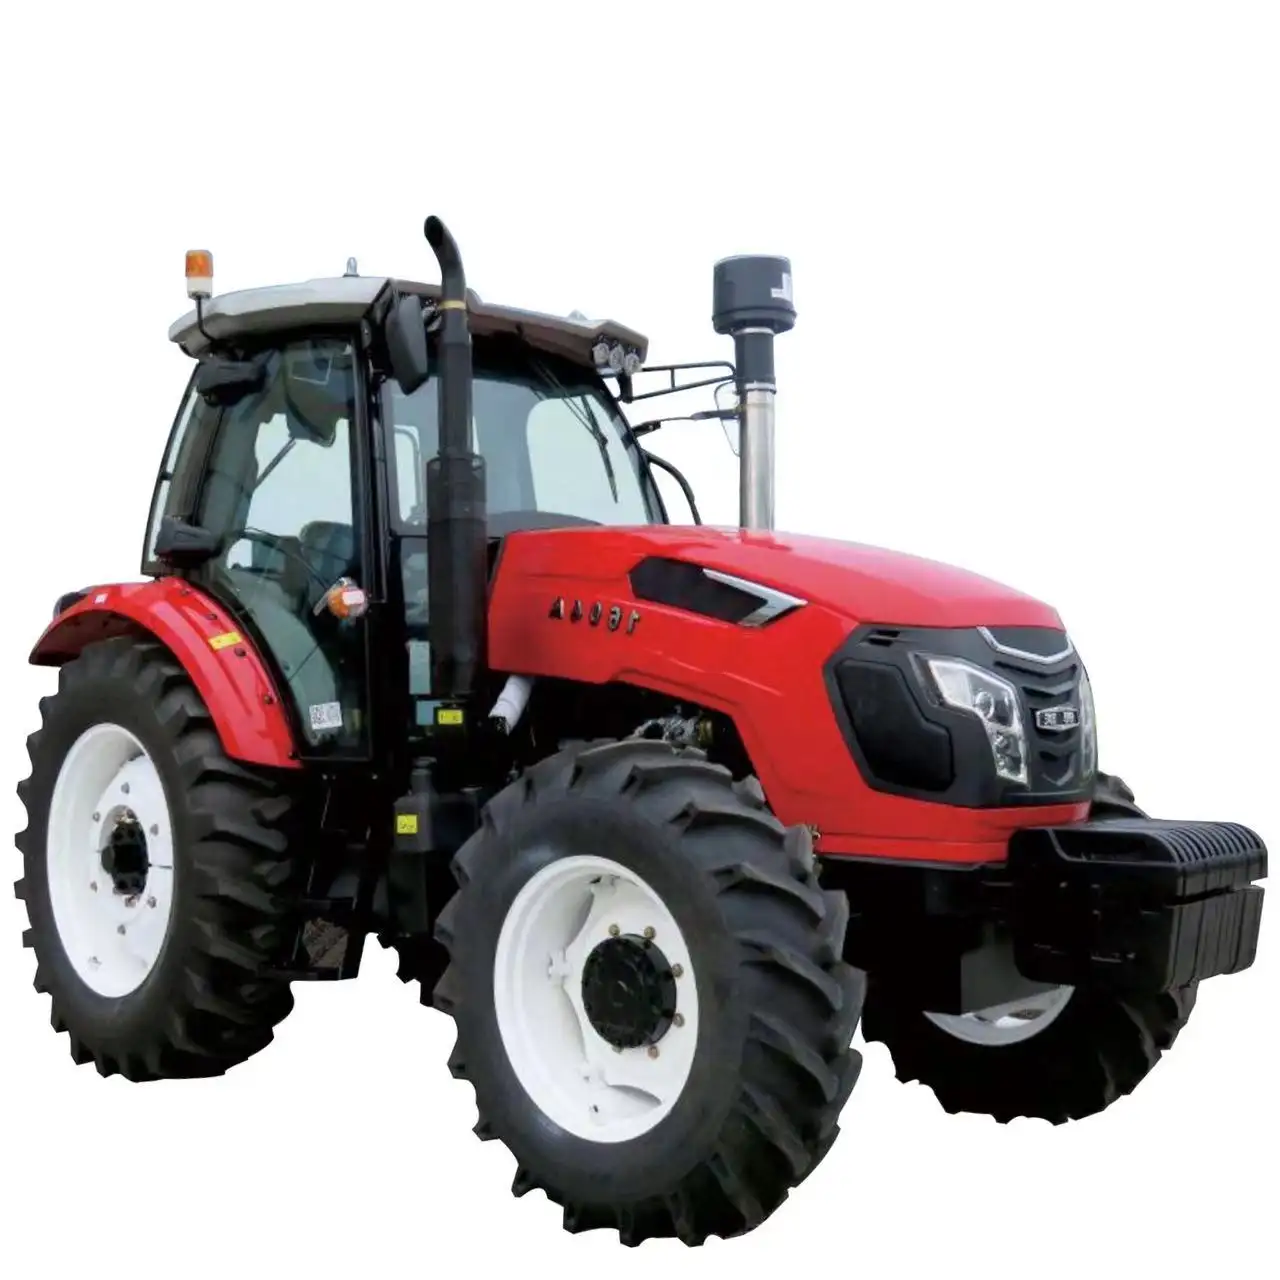 Tolcat Multifonction agricolas 4wd agriculteur tractores tracteur agricole compact petite ferme agricole 4x4 mini terrain agricole